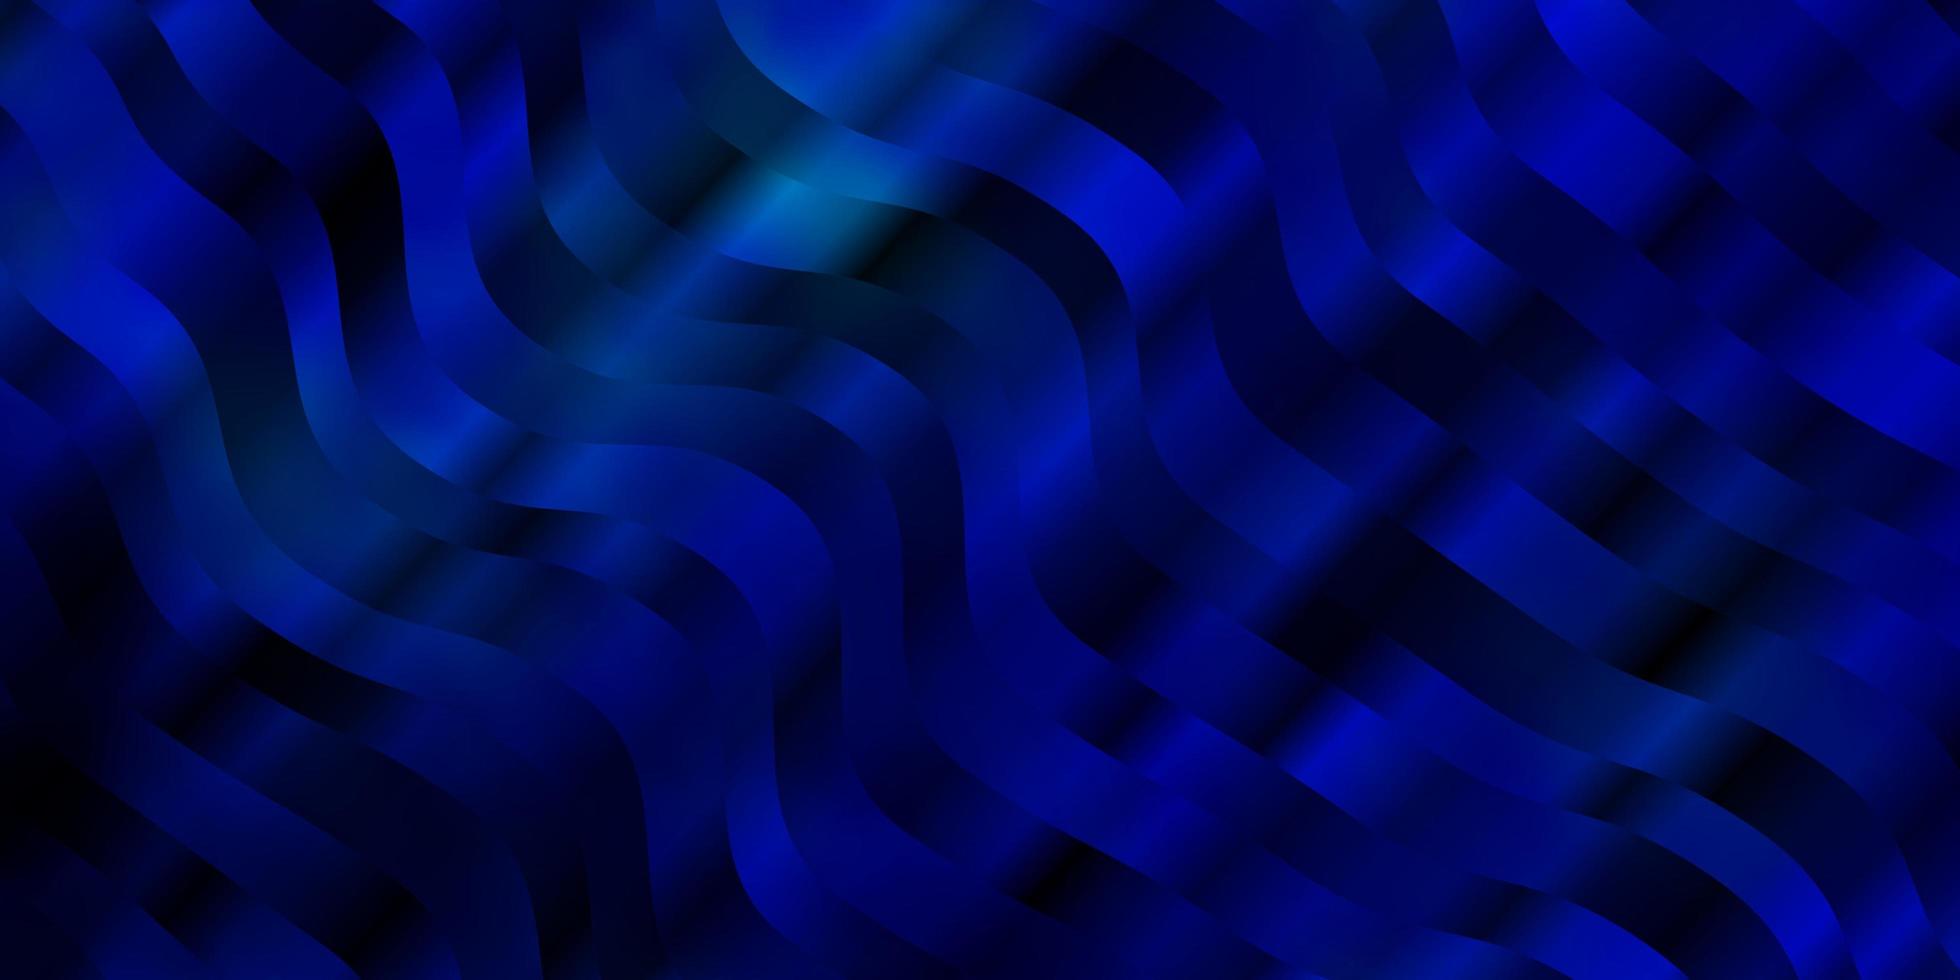 ljusblå vektor mönster med linjer.